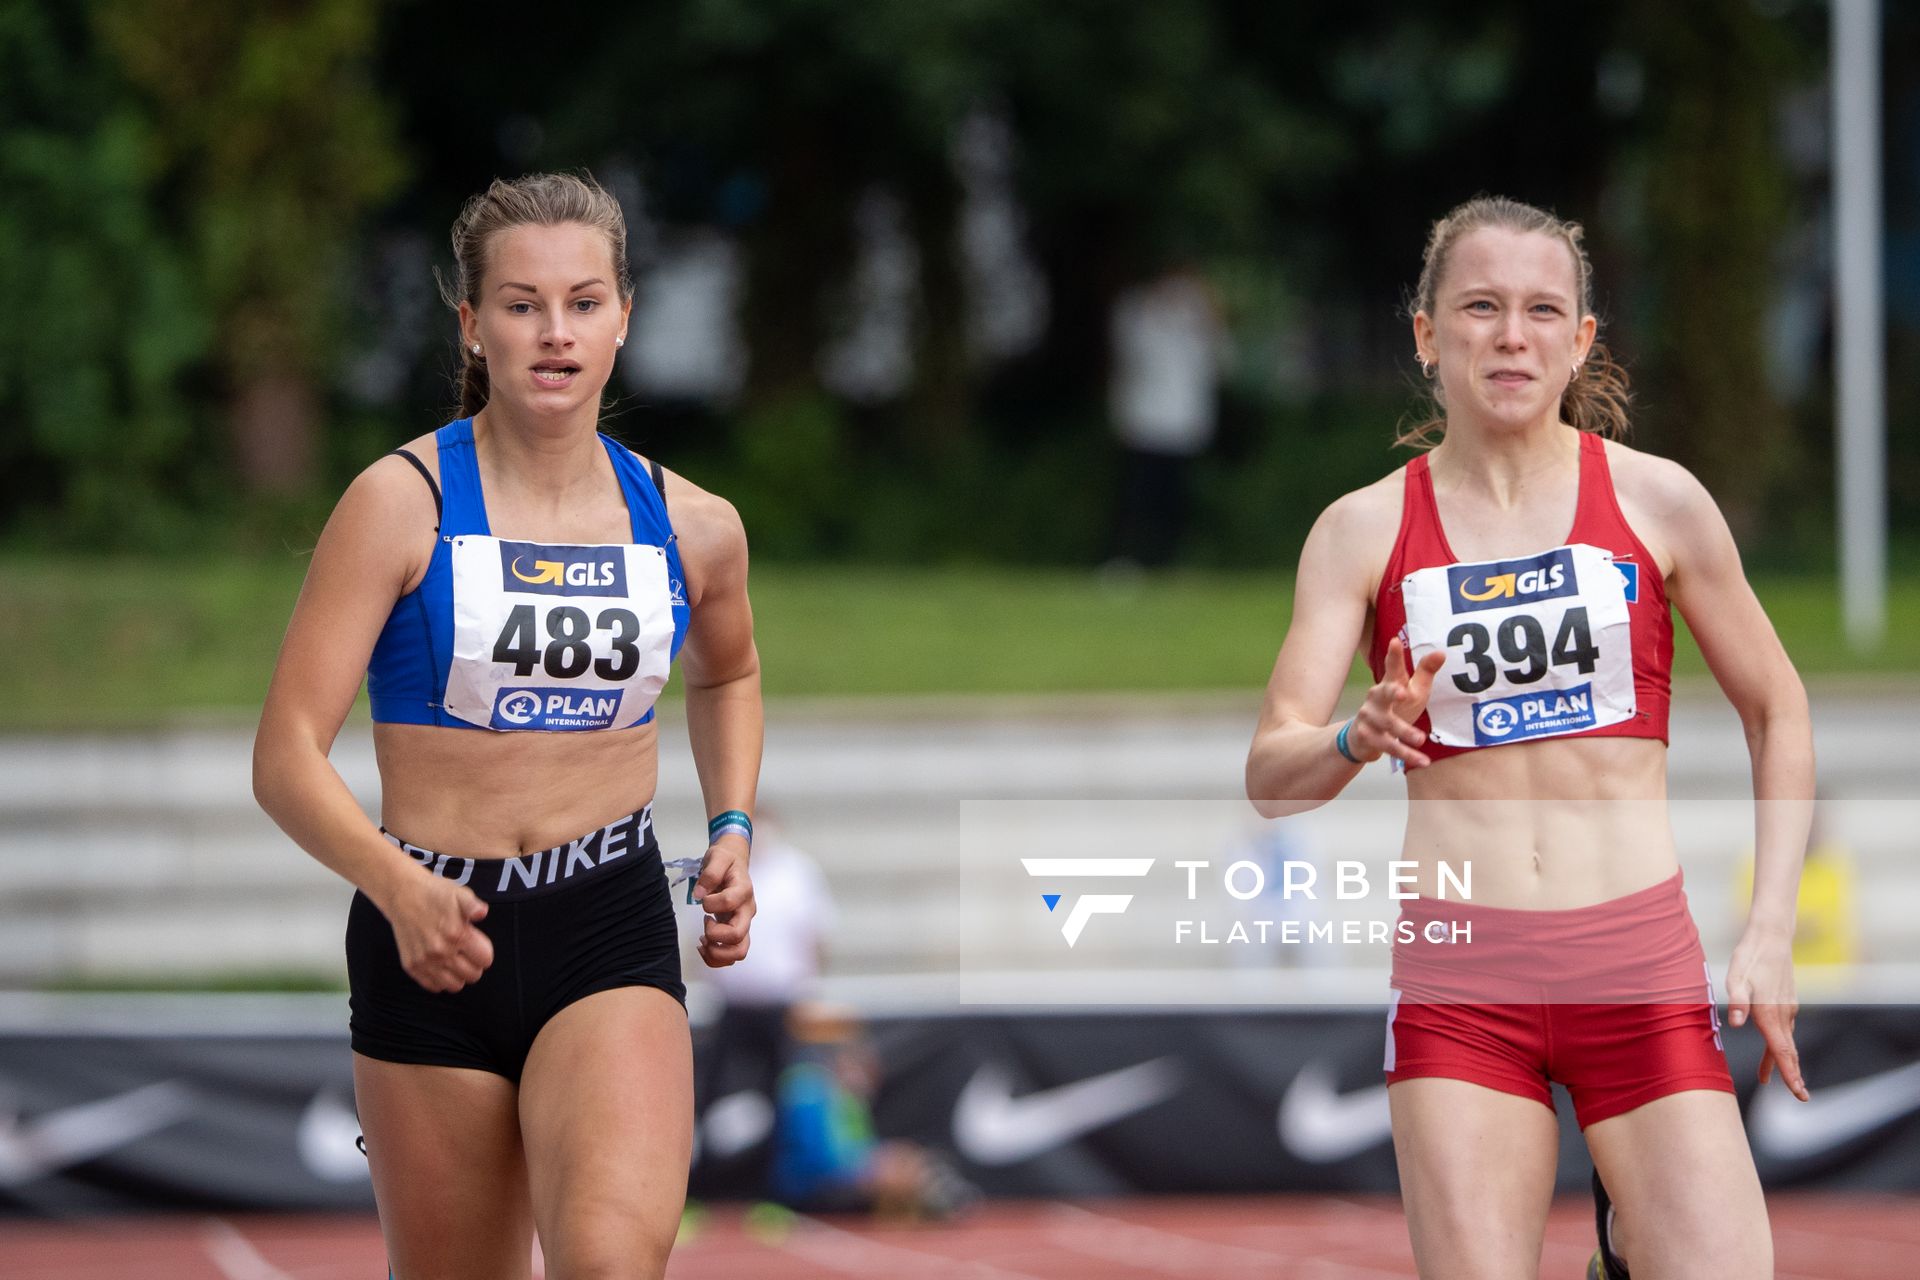 Lea Kimpel (LG Lueneburg) neben Jana Ernst (Hamburger SV) im 200m Vorlauf am 01.08.2021 waehrend den deutschen Leichtathletik-Jugendmeisterschaften 2021 in Rostock (Tag 3)